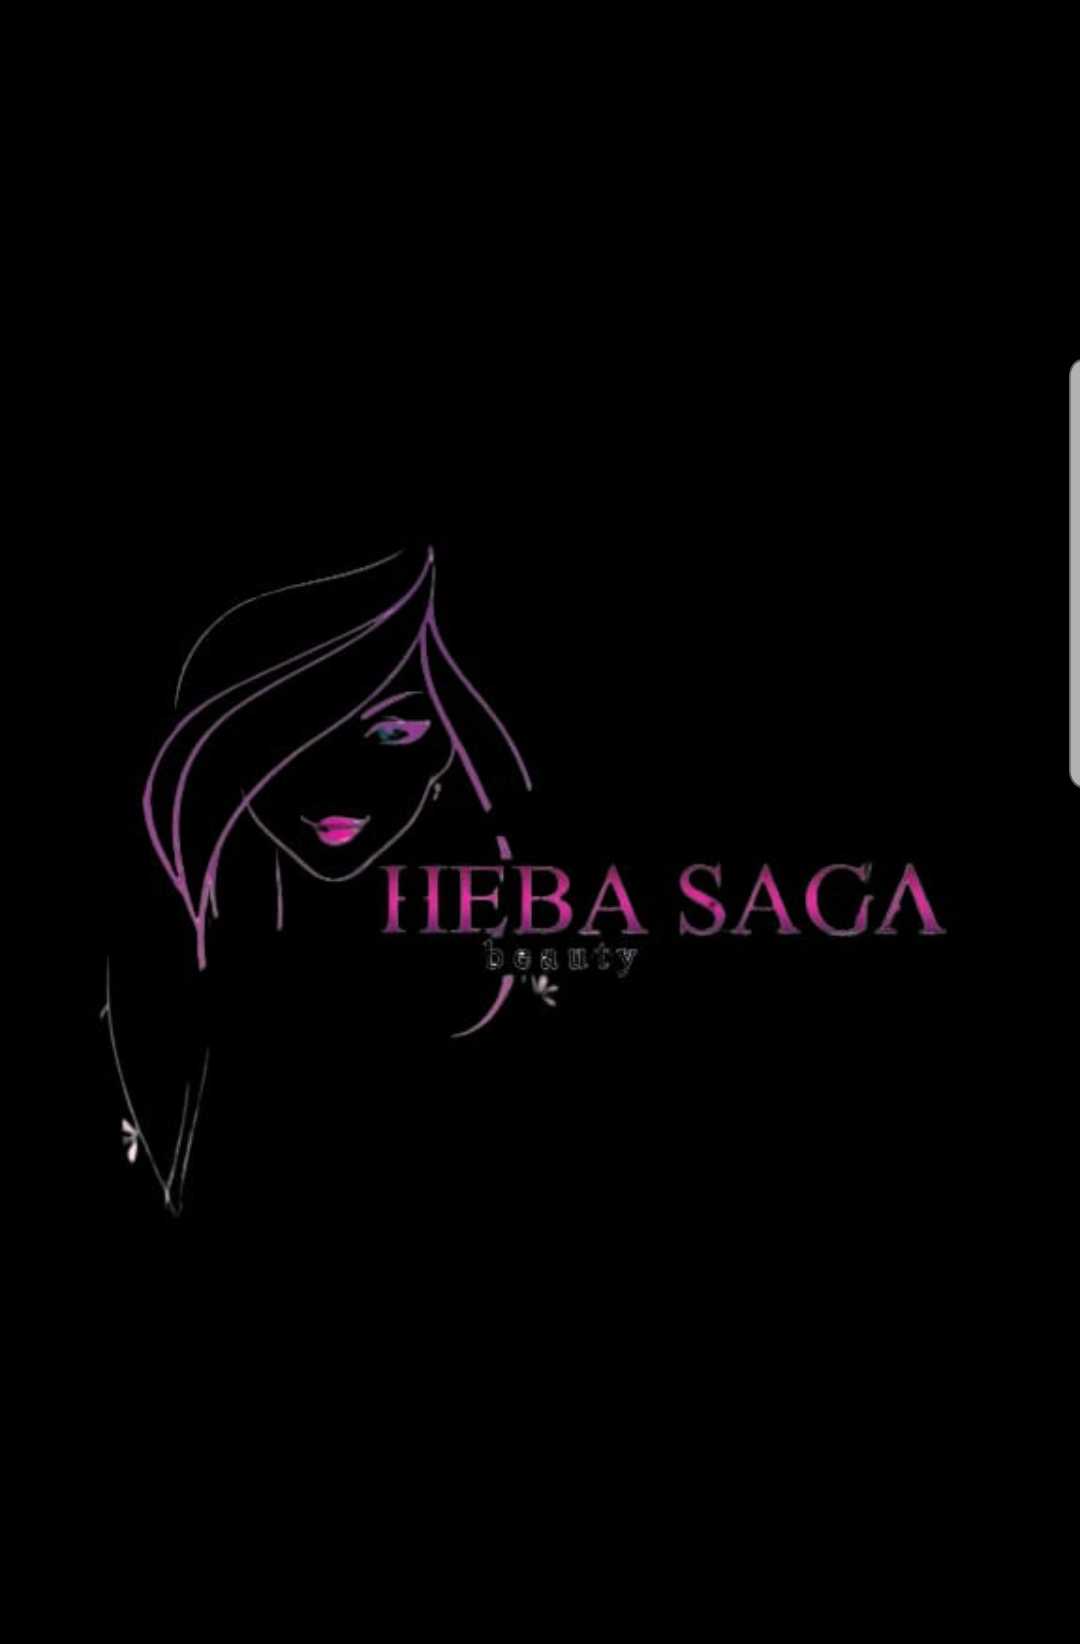 Heba Saga Beauty salon